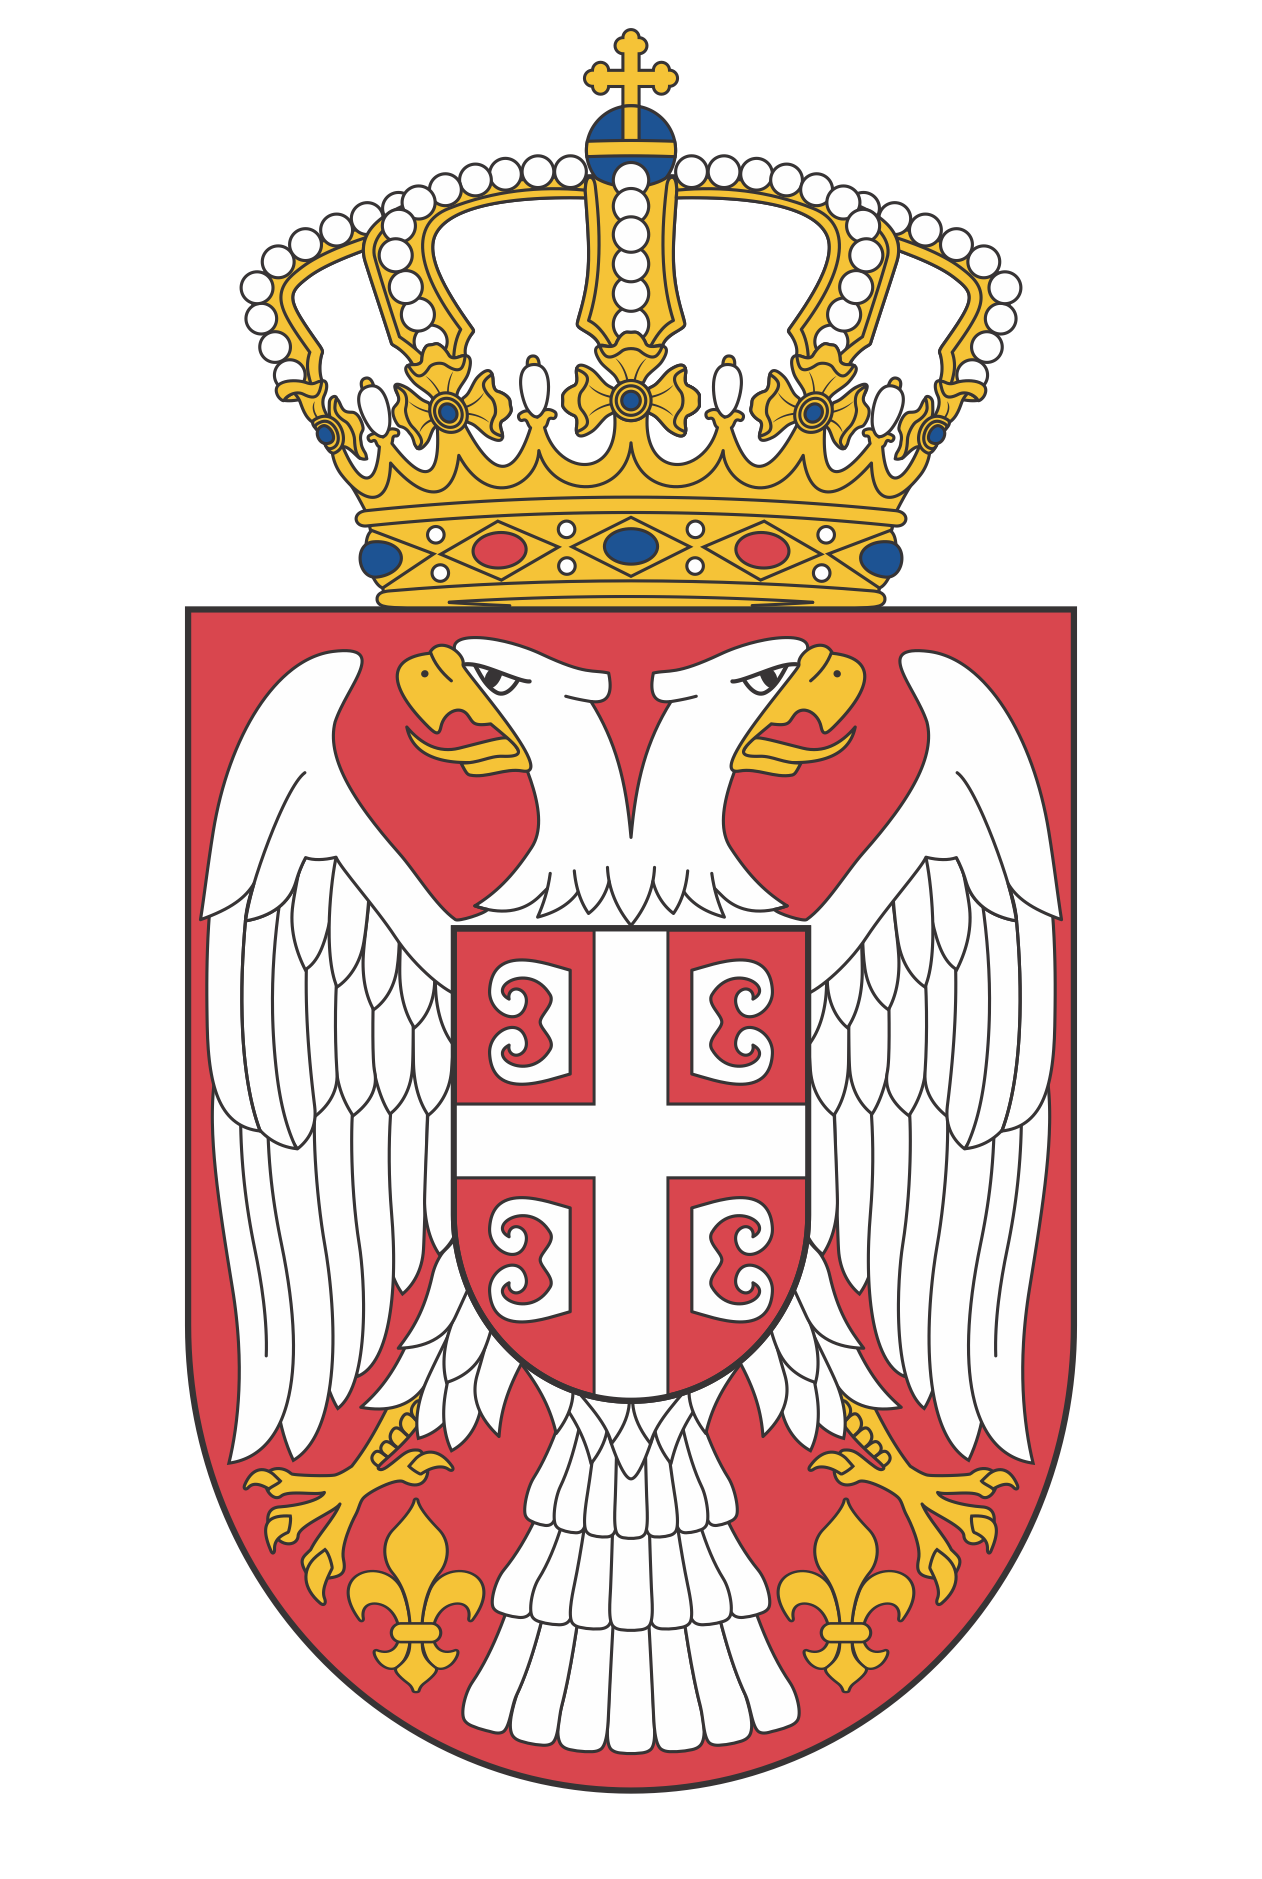 Serbian (Cyrillic, Serbia)